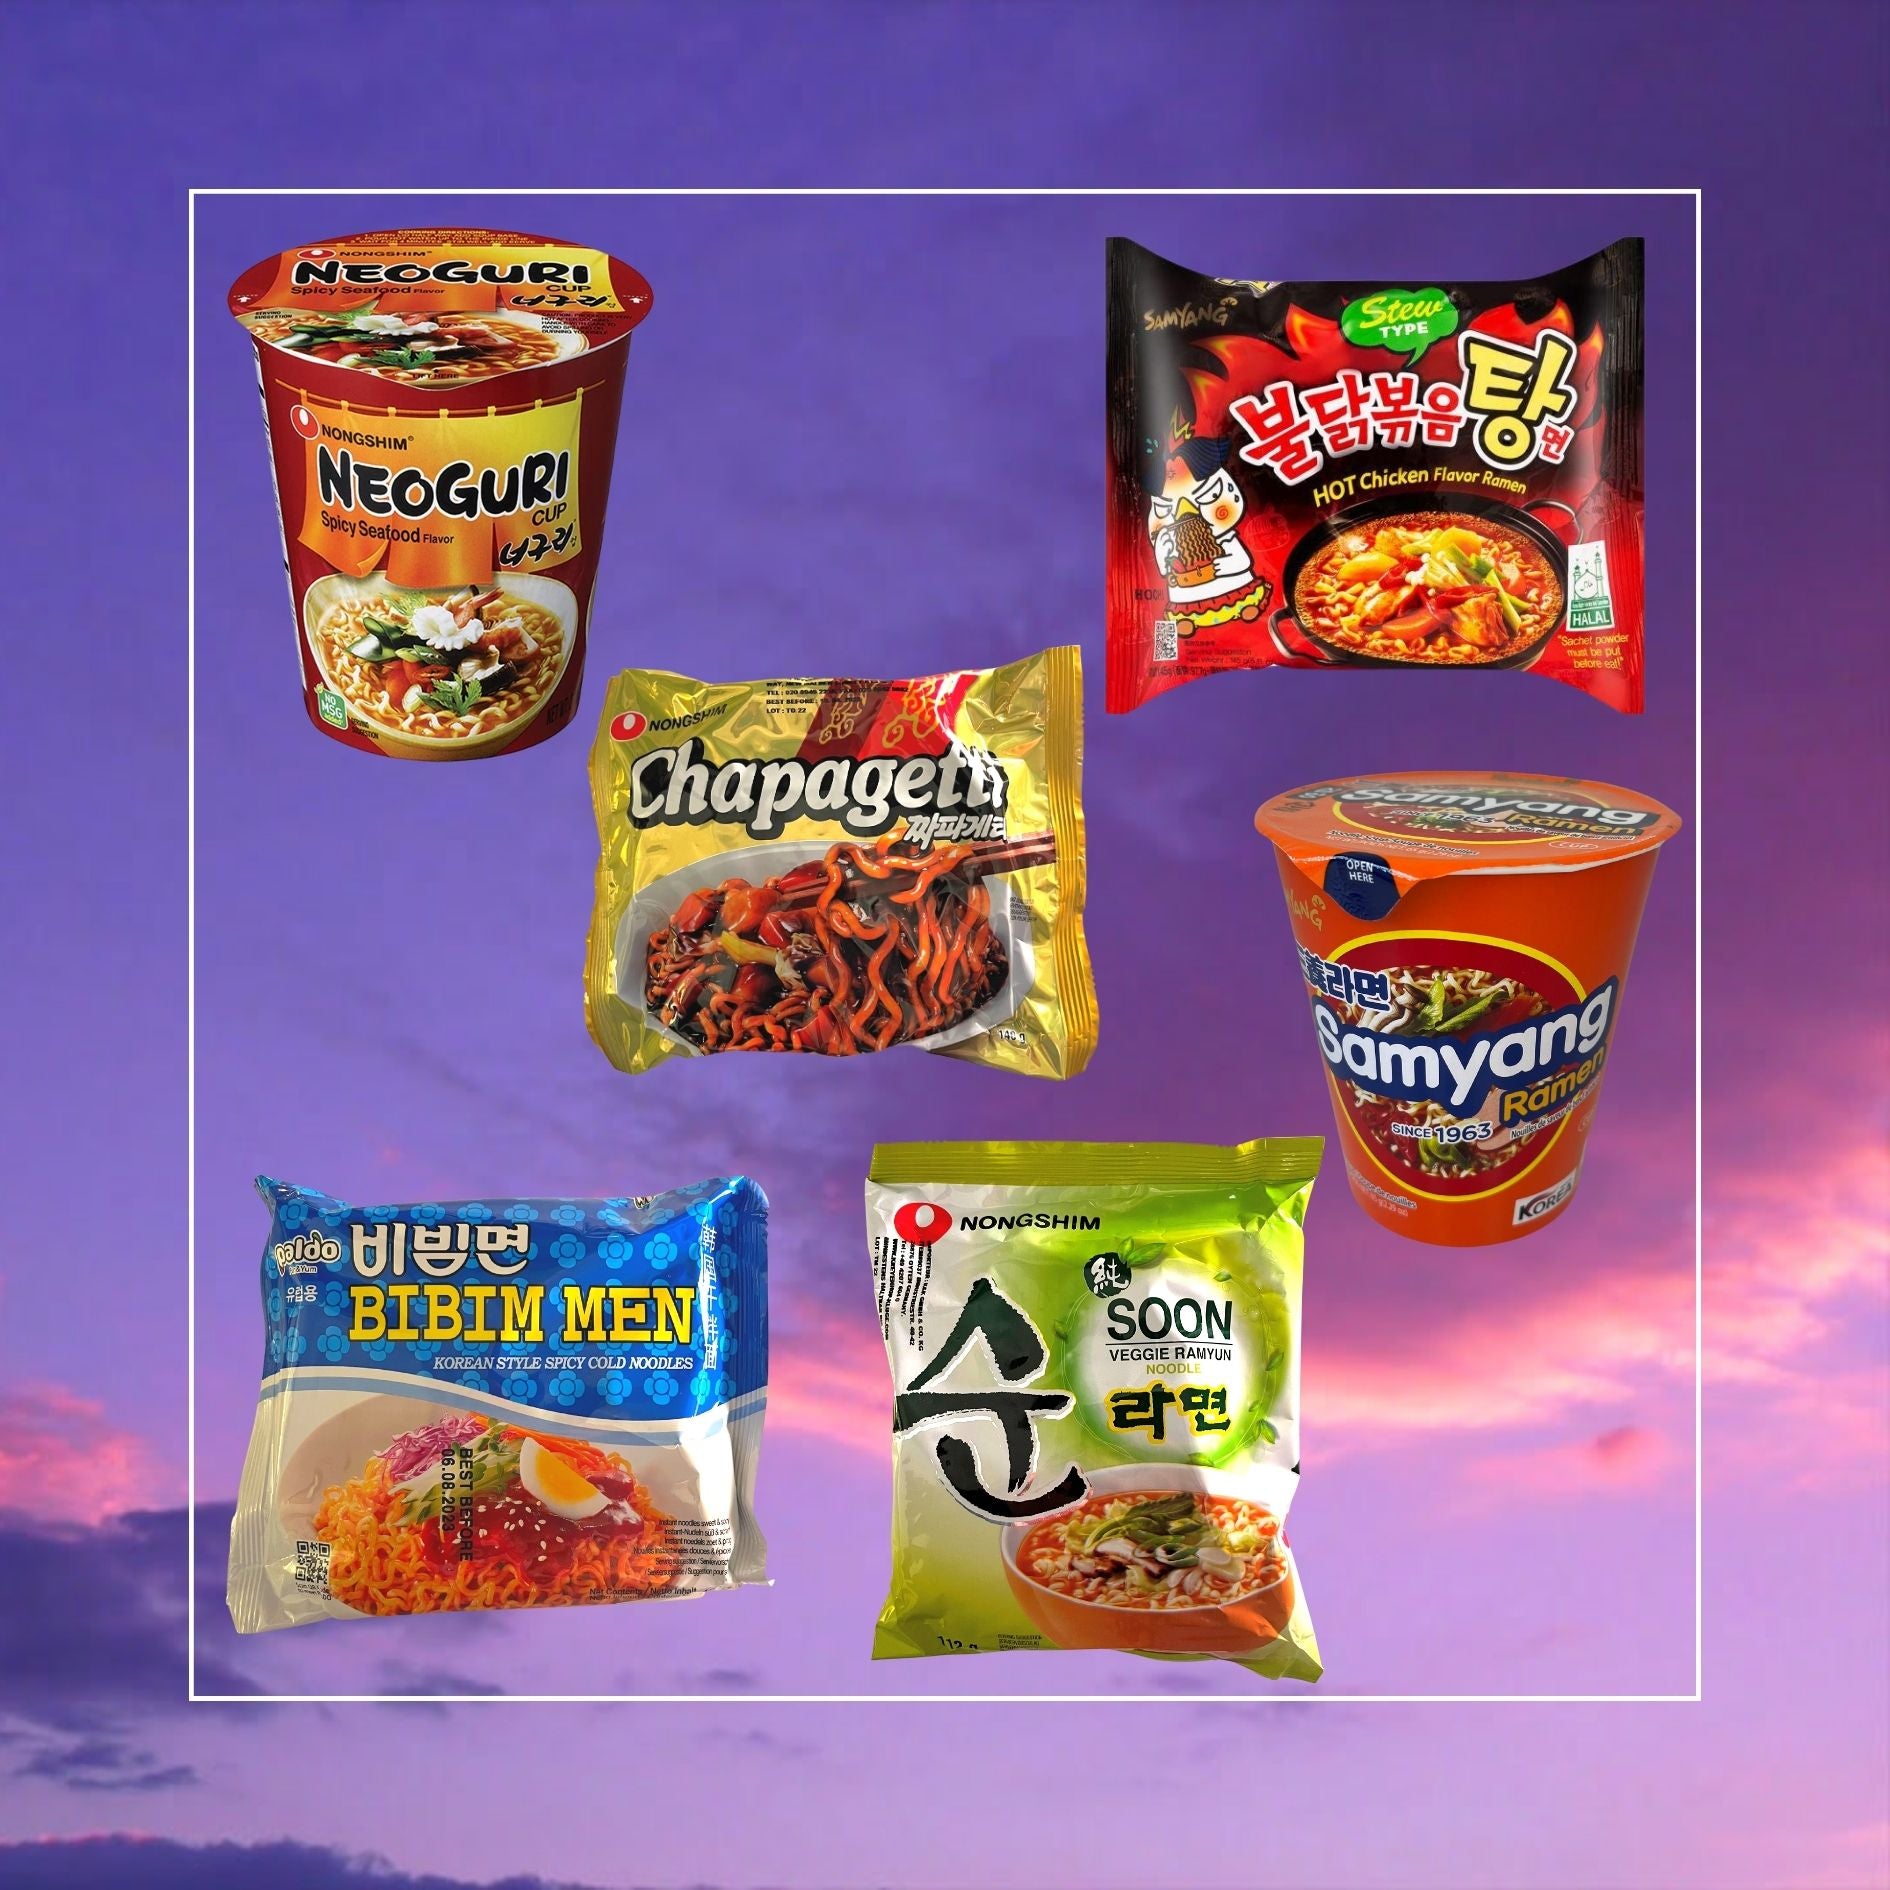 Best Korean Ramyun - Korea's Must-Try Instant Noodles